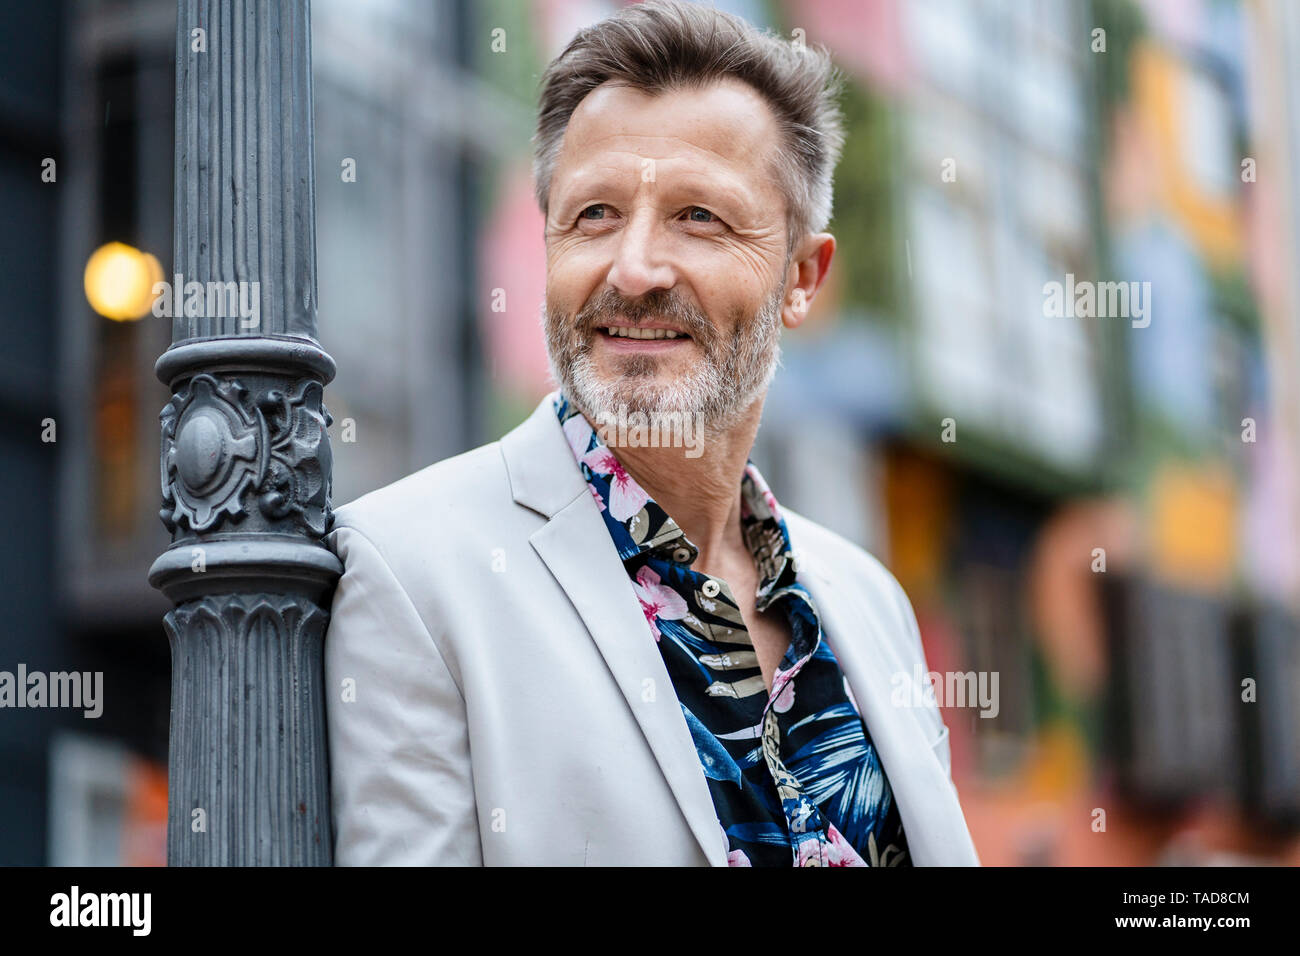 Portrait d'homme mûr à la mode avec barbe grisonnante appuyé contre Banque D'Images